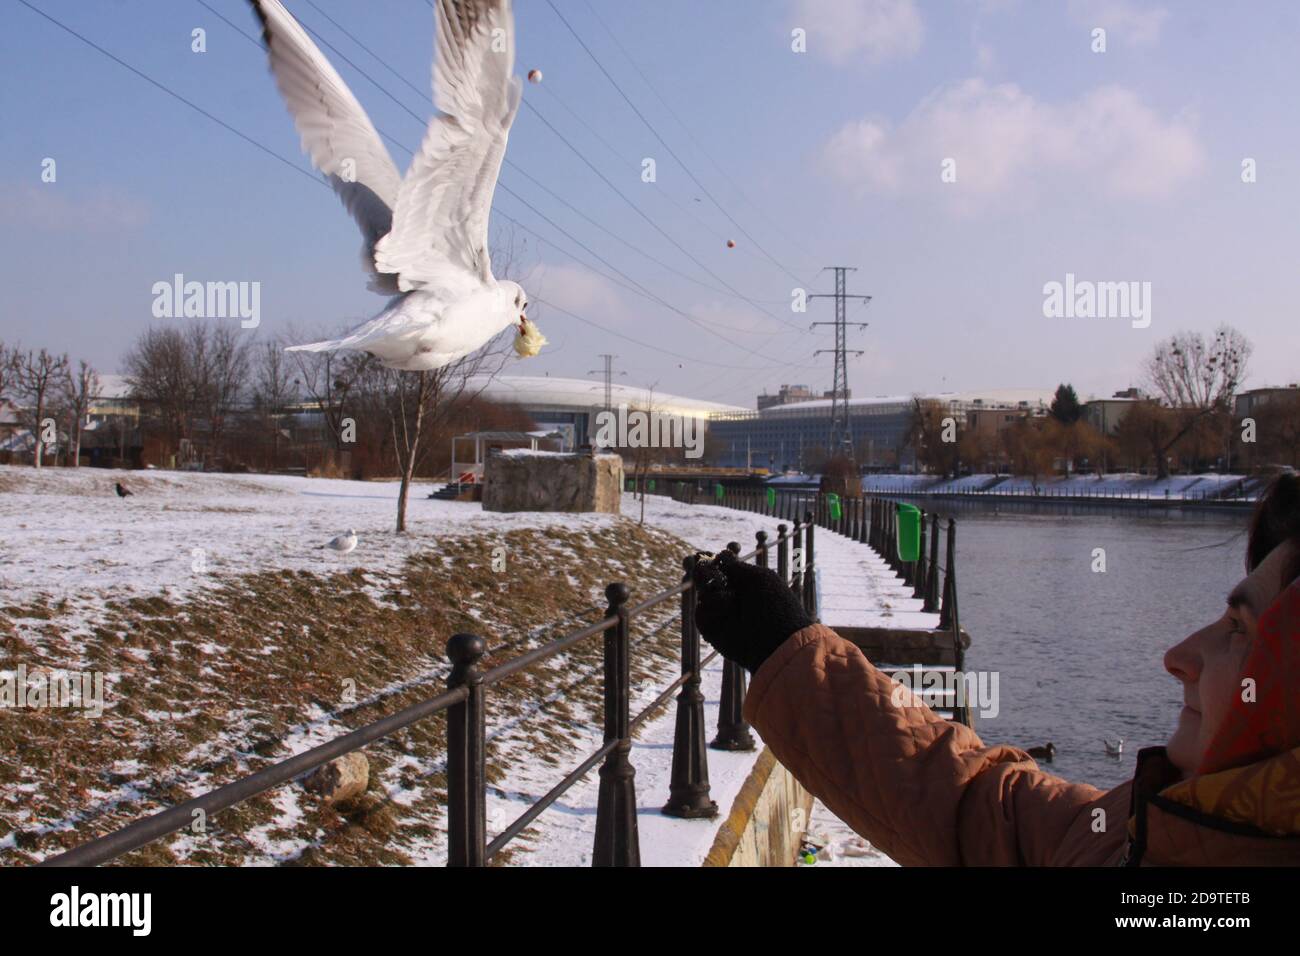 Cluj-Napoca, Rumänien - 15. Januar 2019: Frau füttert kleine Möwe aus der Hand im kalten Winter. Wildvogel im Flug im kalten Winter. Fliegende Schwarzkopf-gu Stockfoto